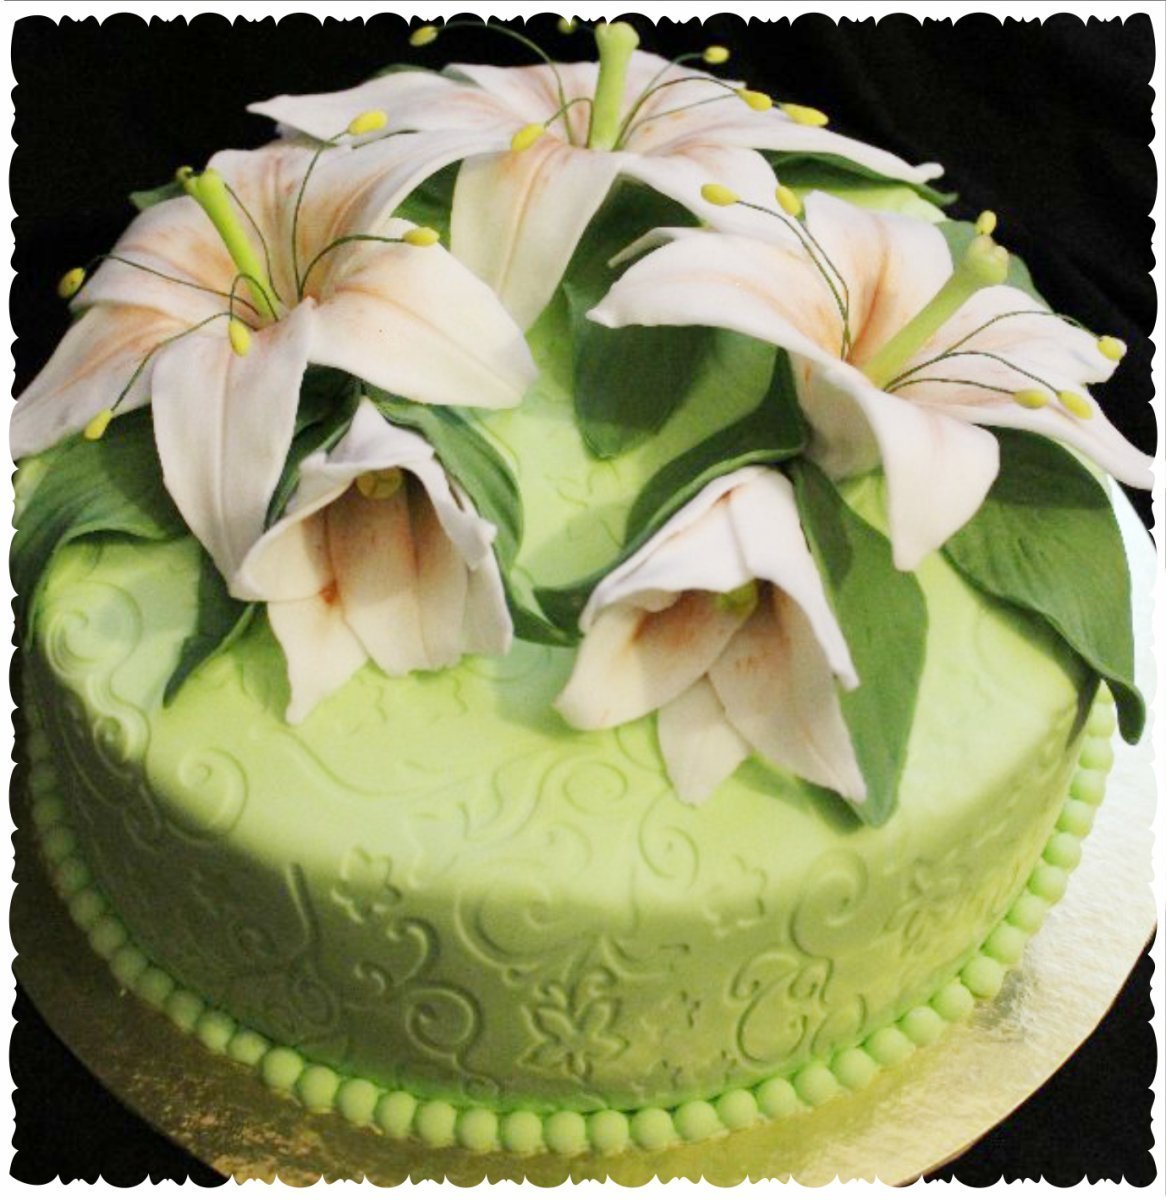 Торт с лилиями